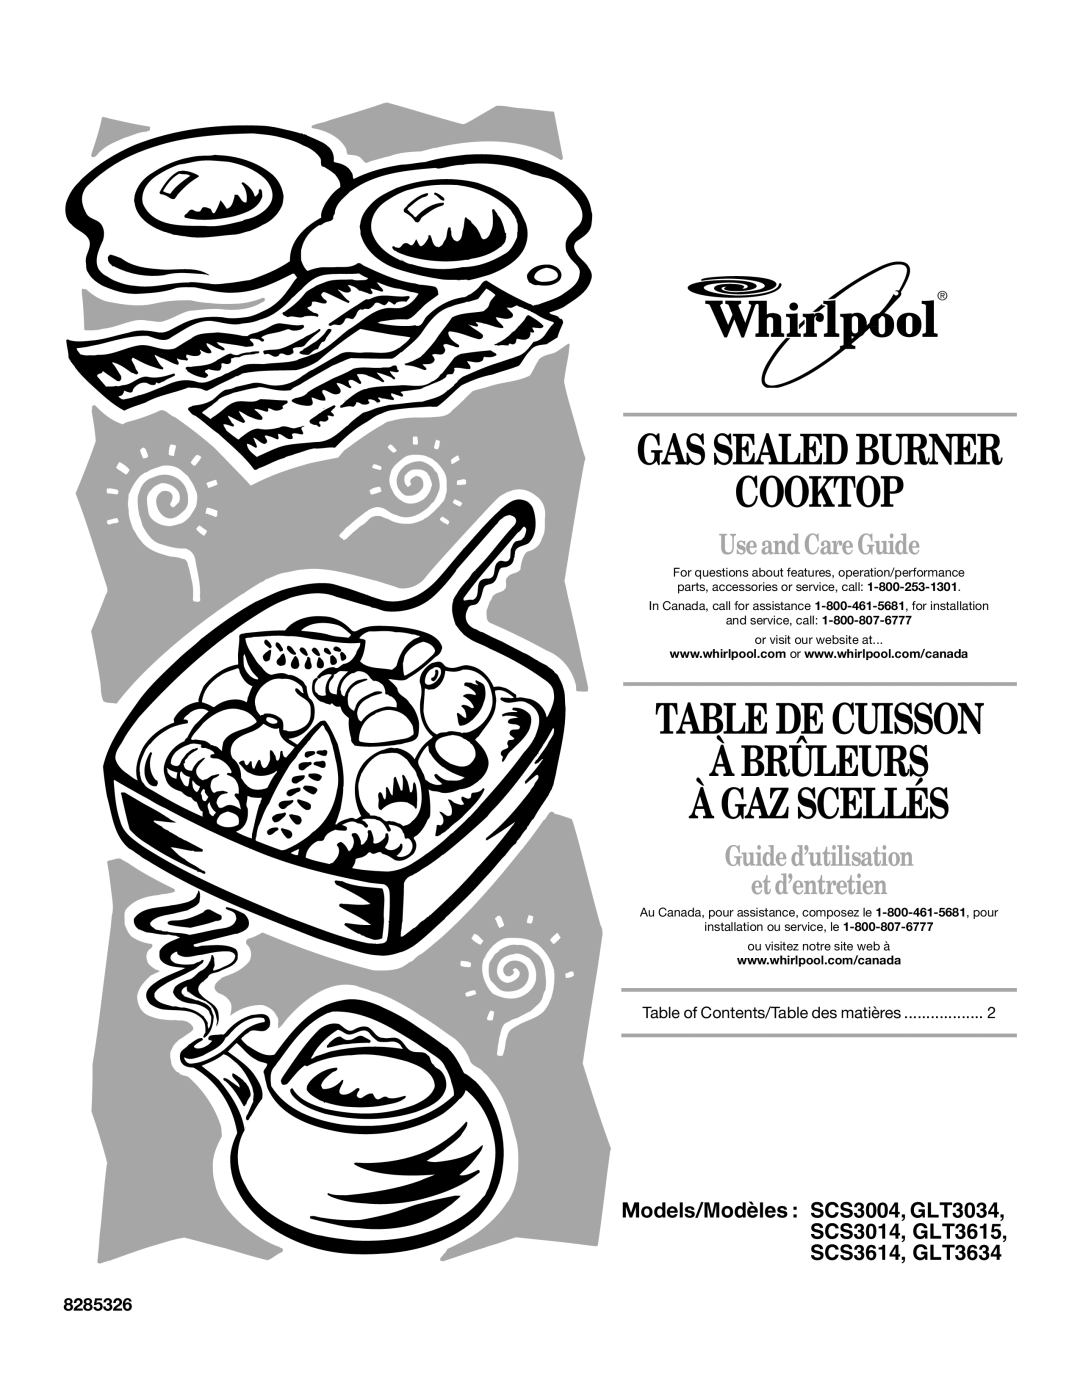 Whirlpool GLT3034 manual Cooktop, Table De Cuisson À Brûleurs À Gaz Scellés, Use and Care Guide, Gas Sealed Burner 